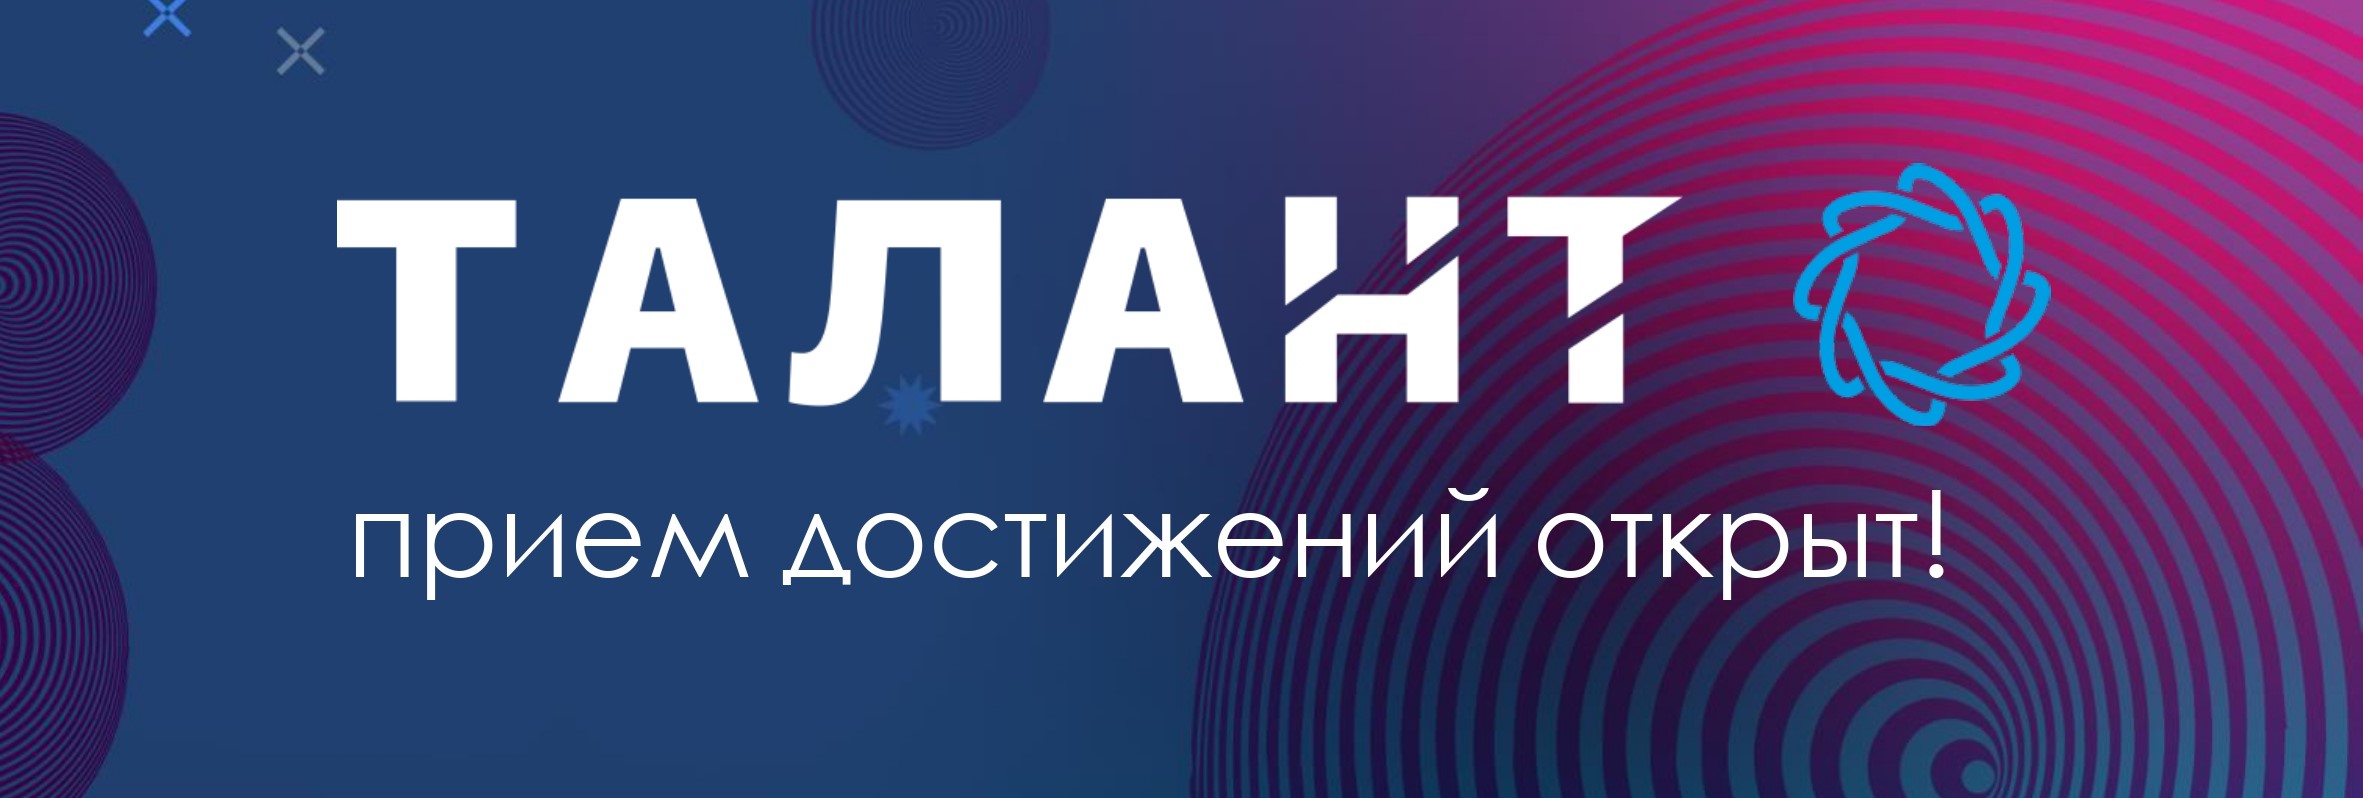 Объявлены победители Всероссийского конкурса open source проектов школьников и студентов